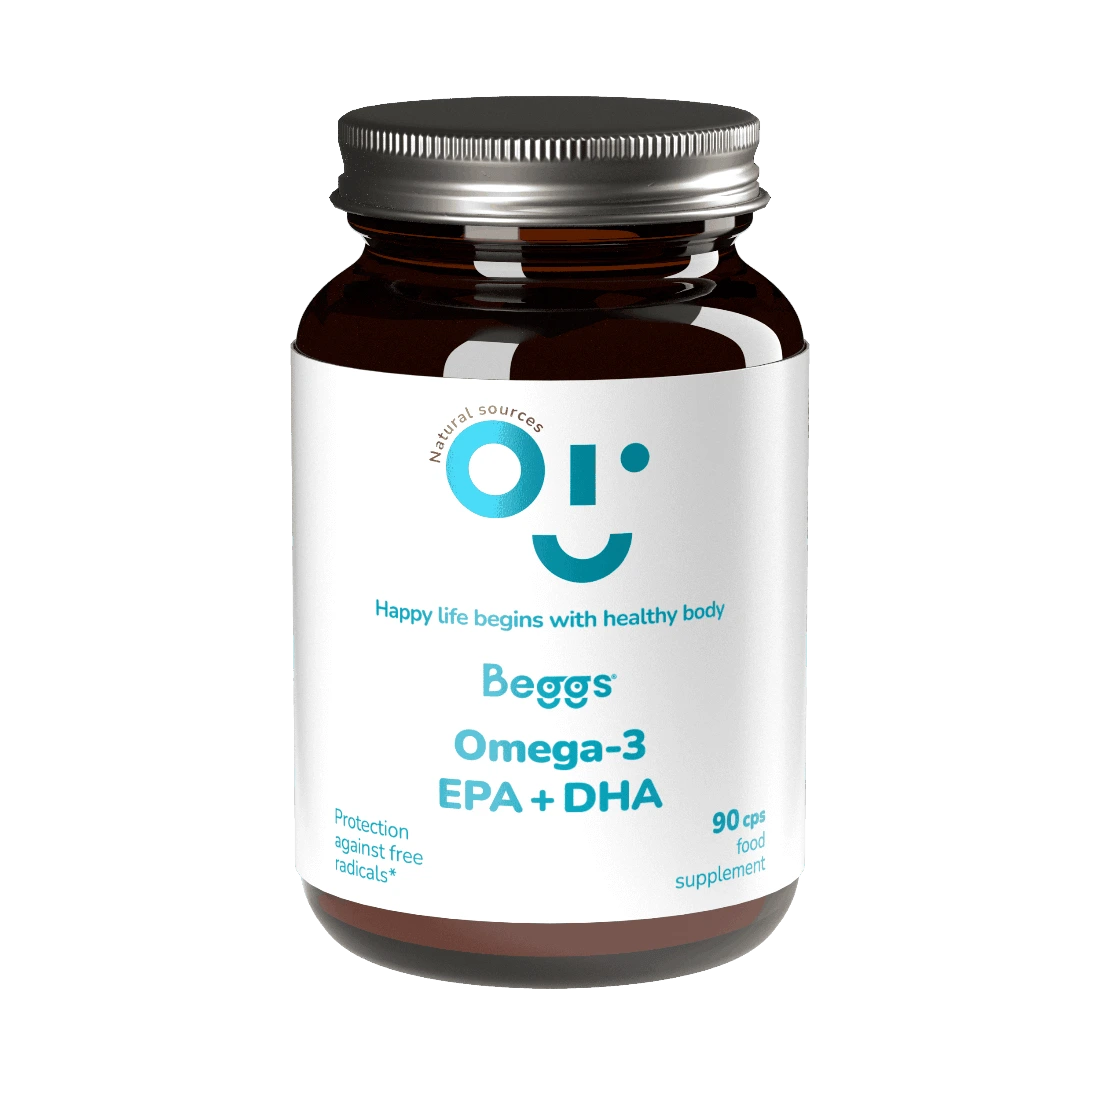 BEGGS_Omega-3_EPA_DHA_200ml